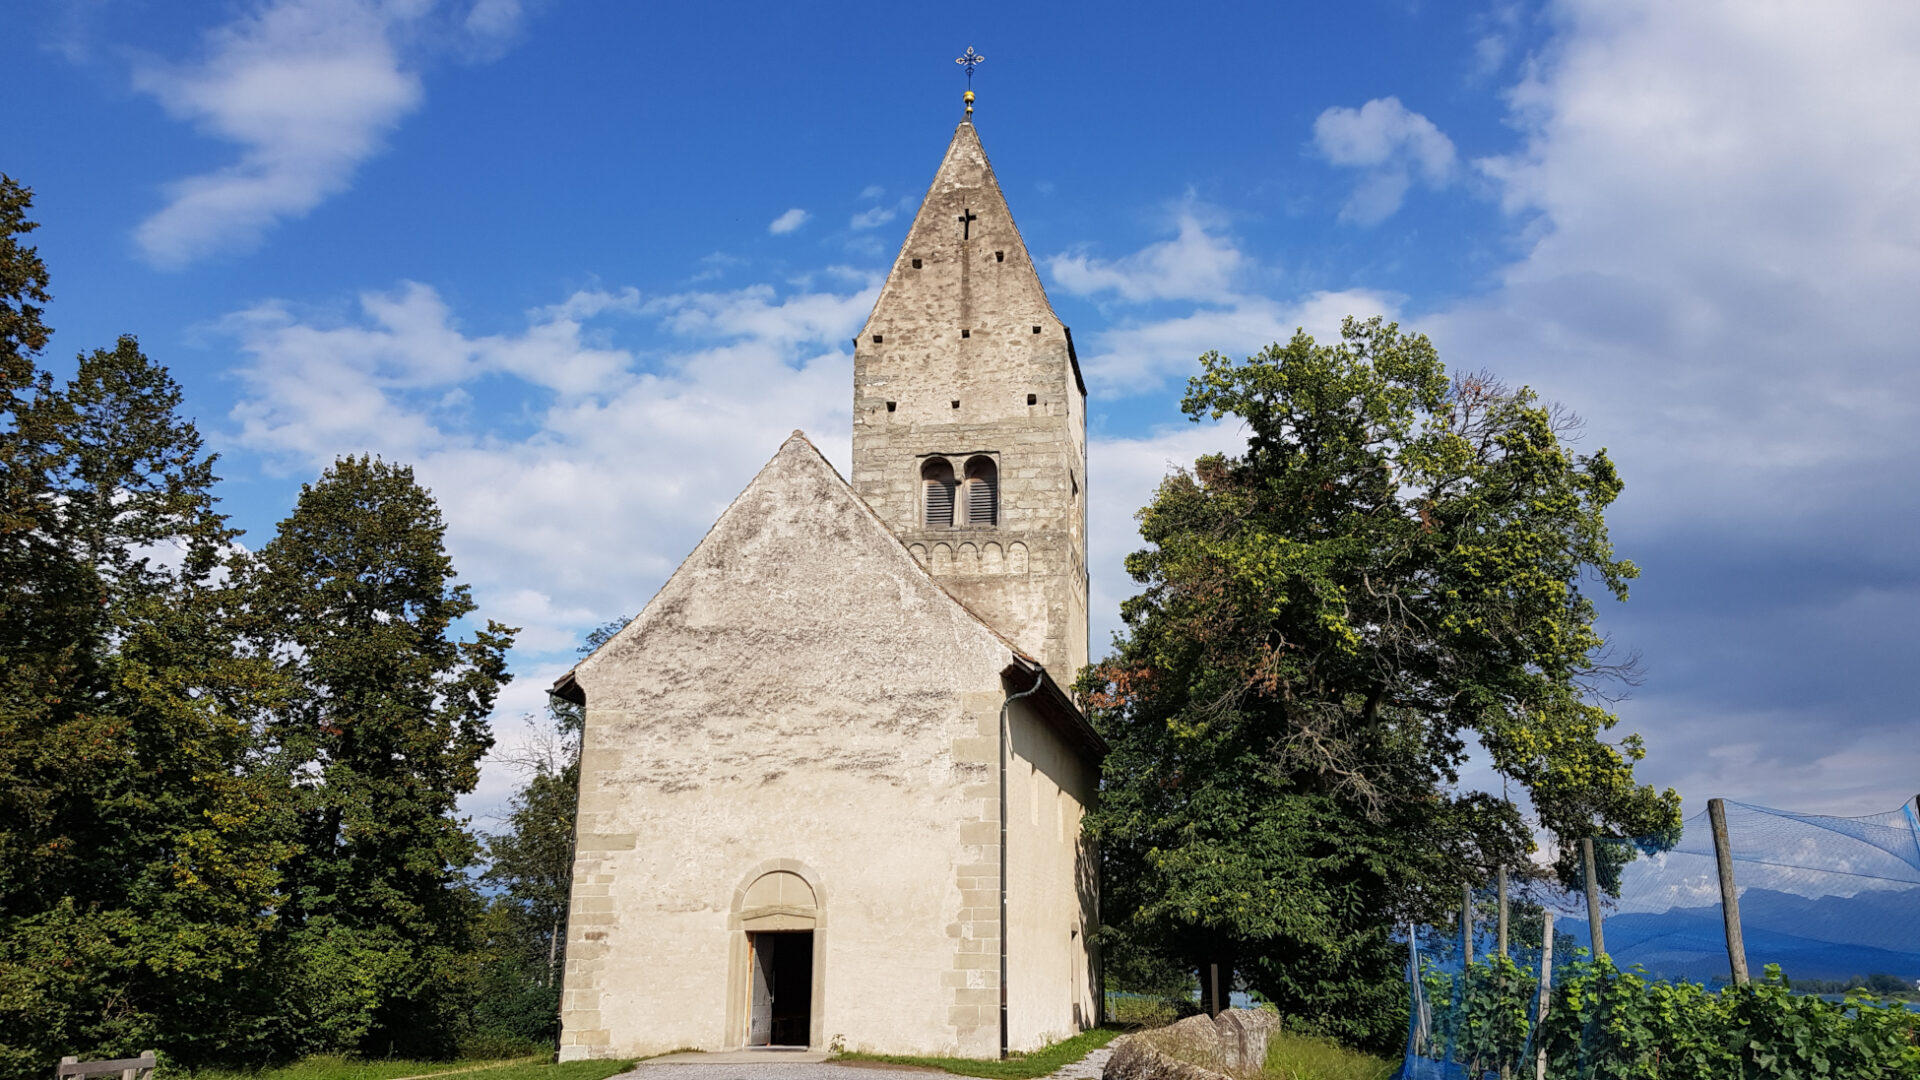 Die Kirche St. Peter und Paul auf der Insel Ufnau wurde in der Mitte des 12. Jahrhunderts errichtet.